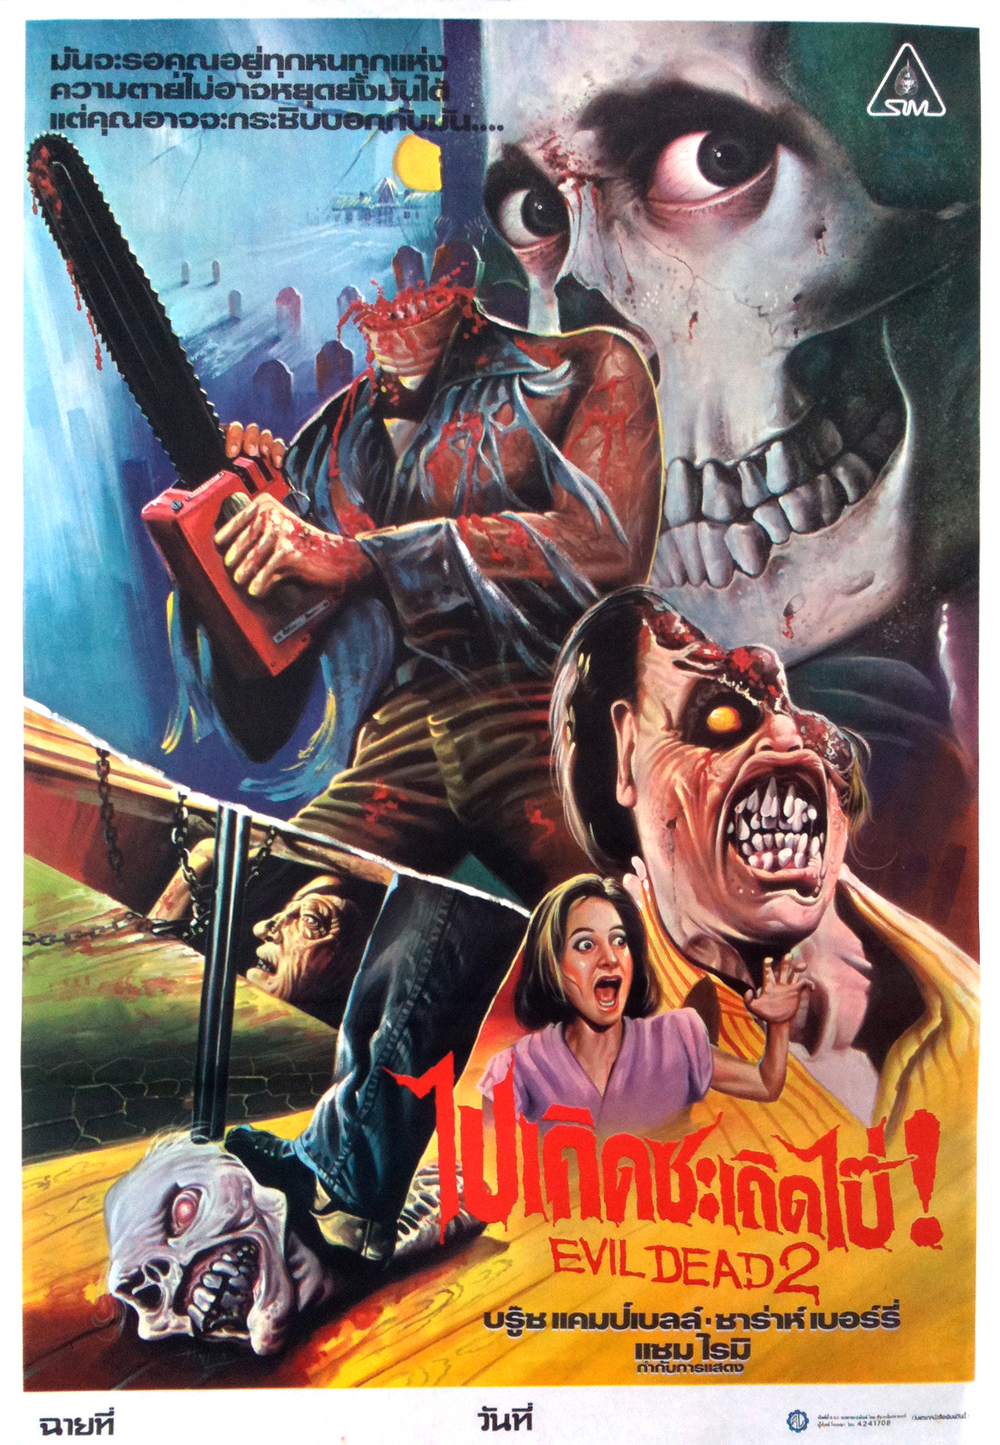 Old Retro Horror Film Posters - Thai Evil Dead